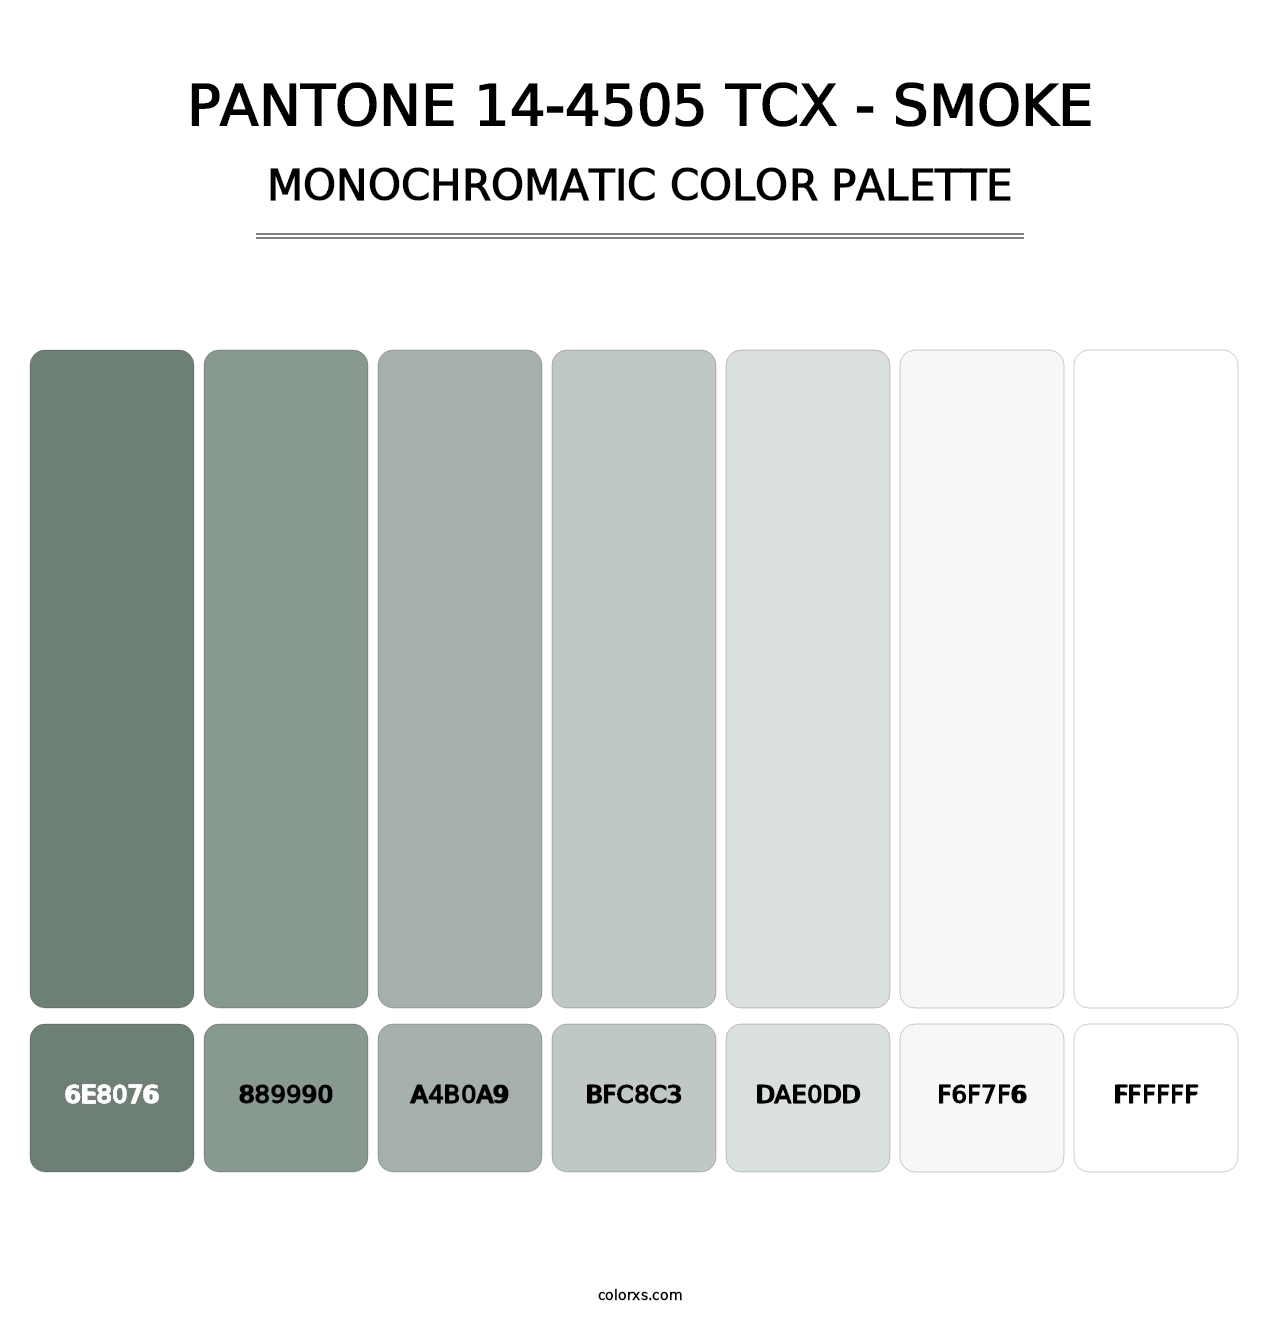 PANTONE 14-4505 TCX - Smoke - Monochromatic Color Palette